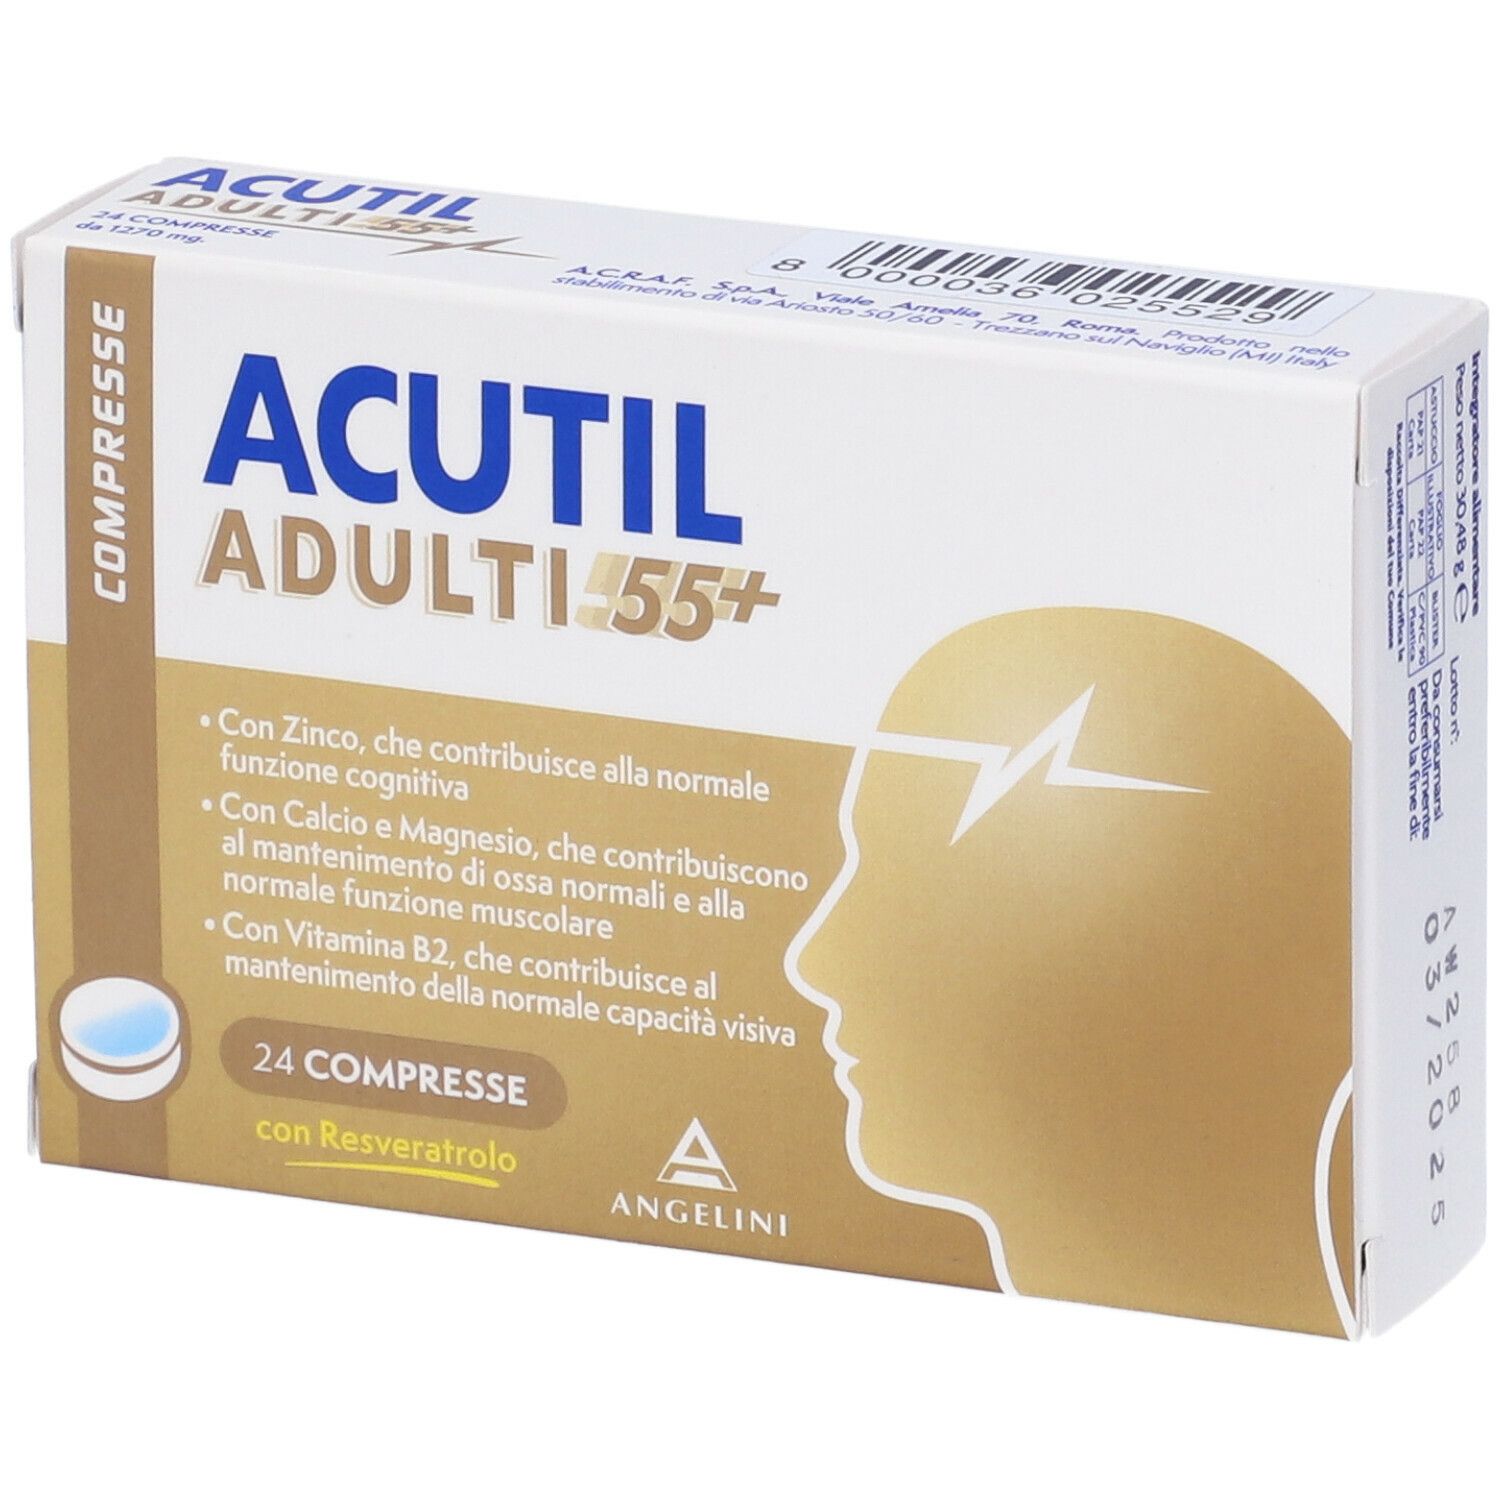 Image of Acutil Adulti 55+